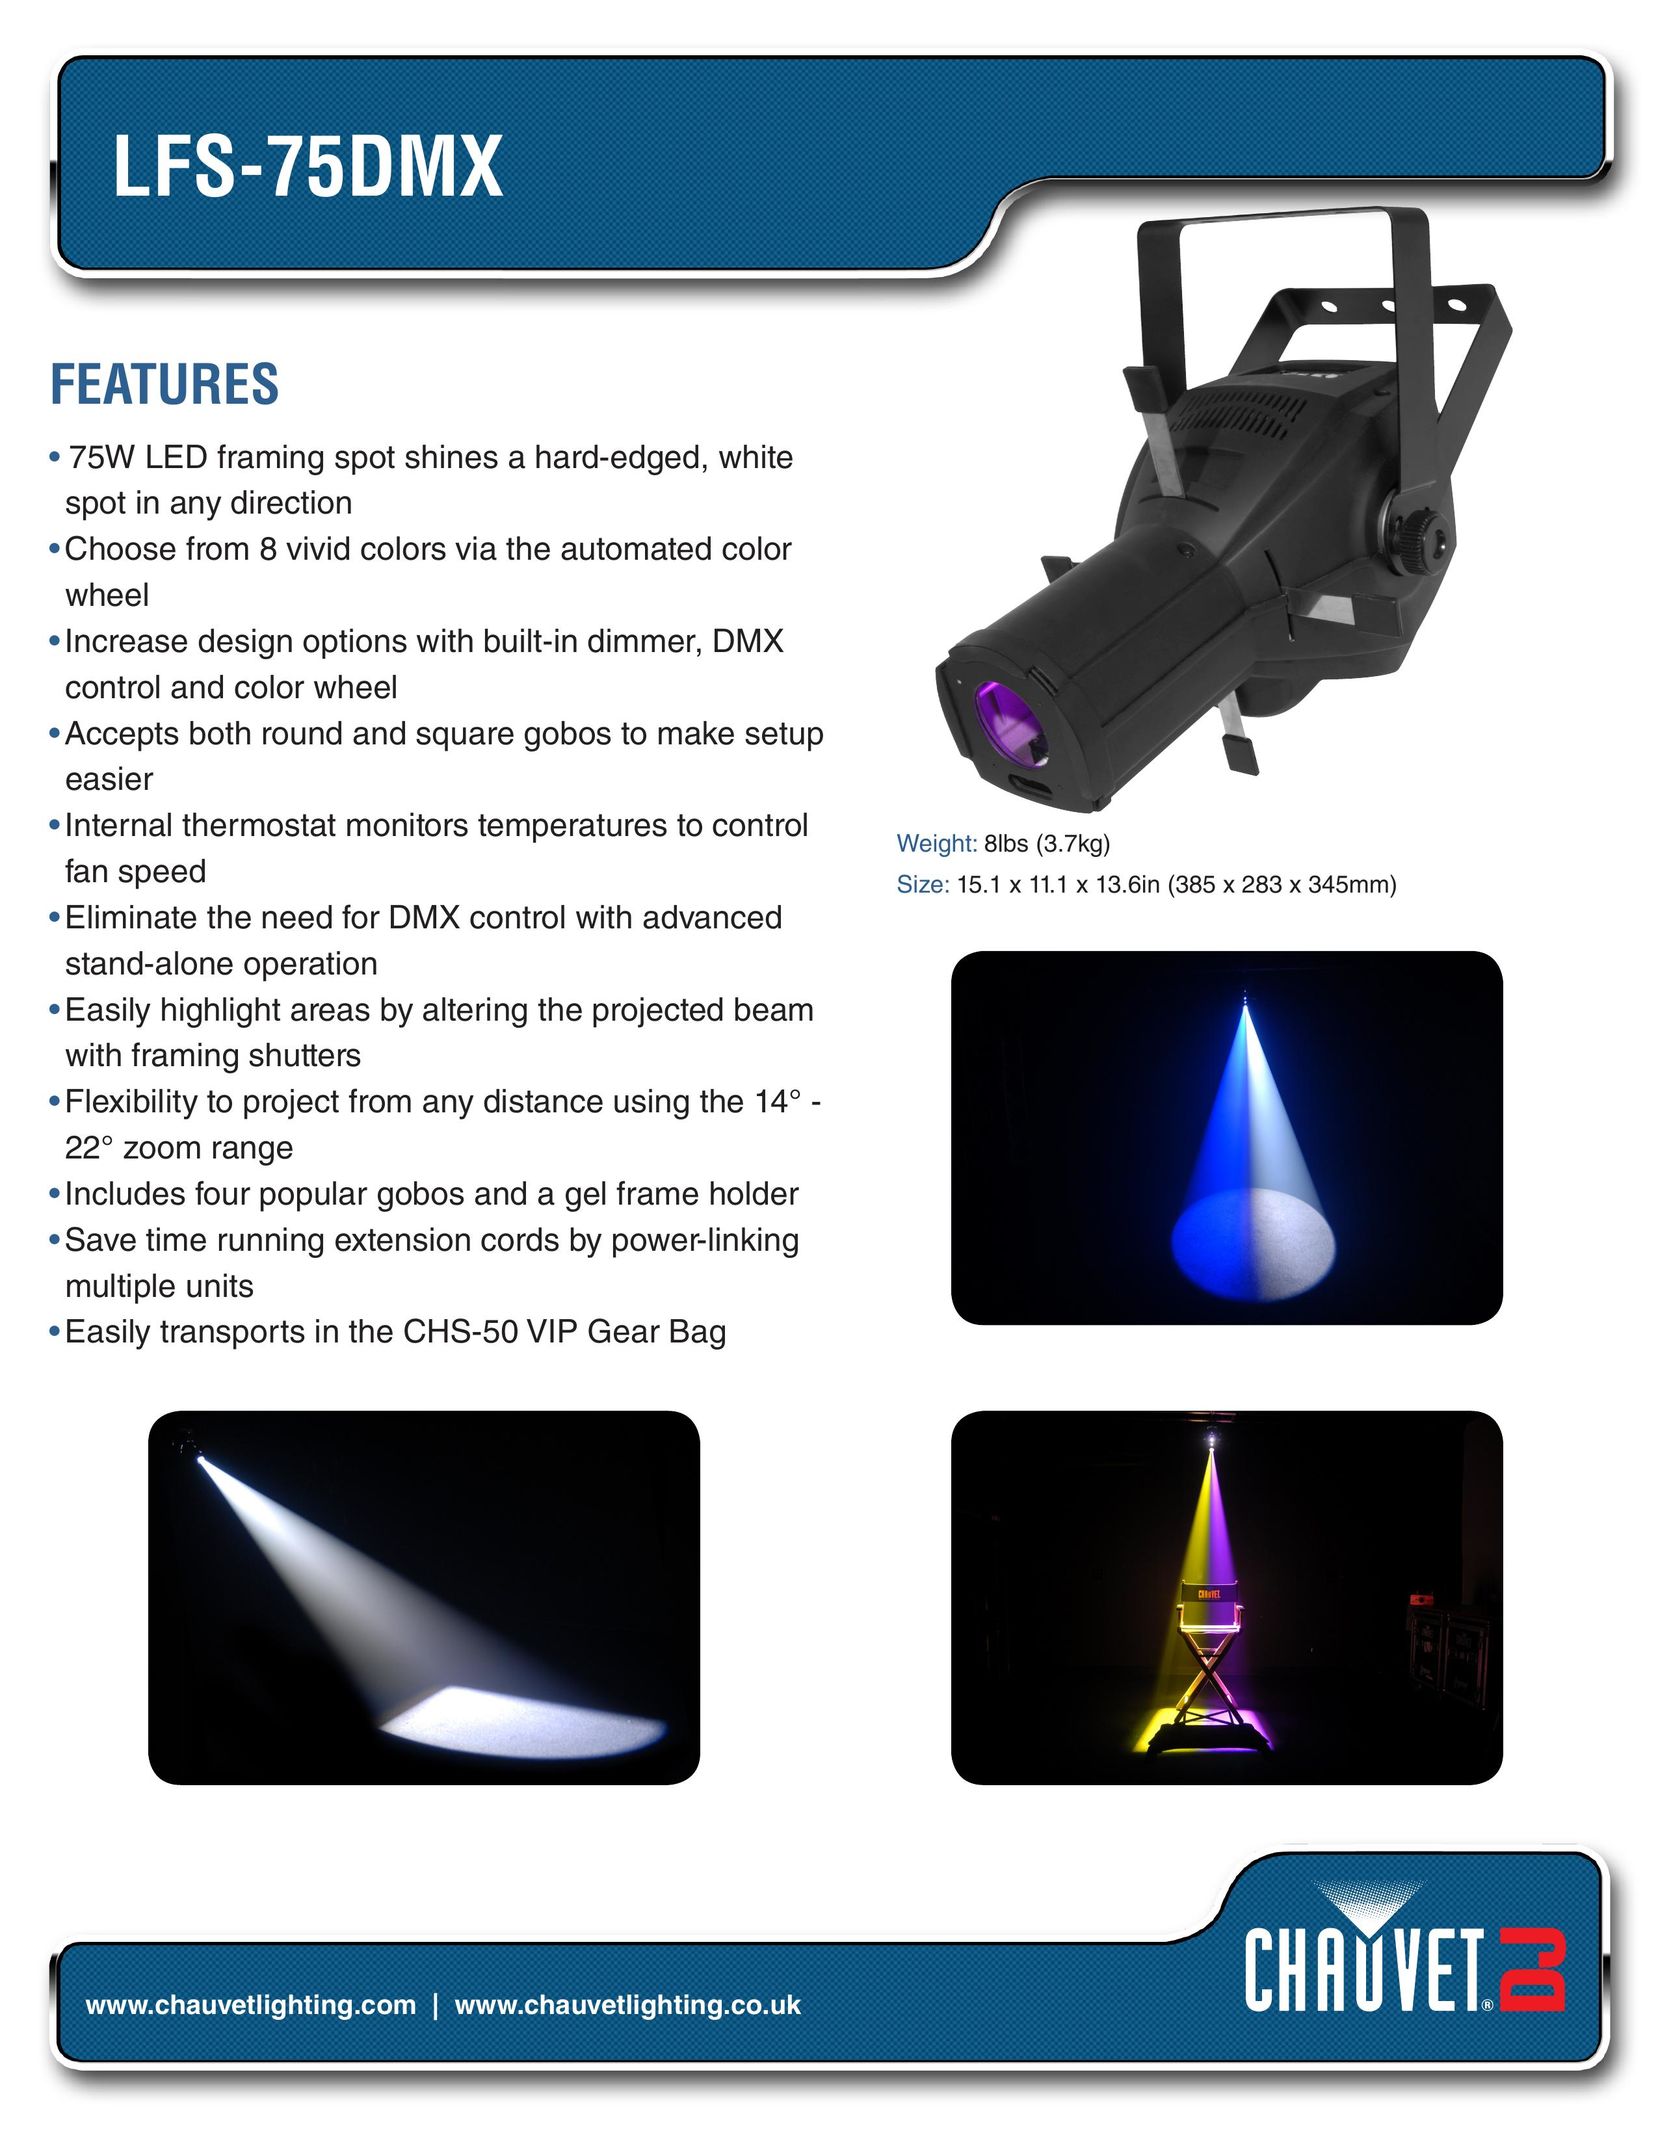 Chauvet LFS-75DMX Work Light User Manual